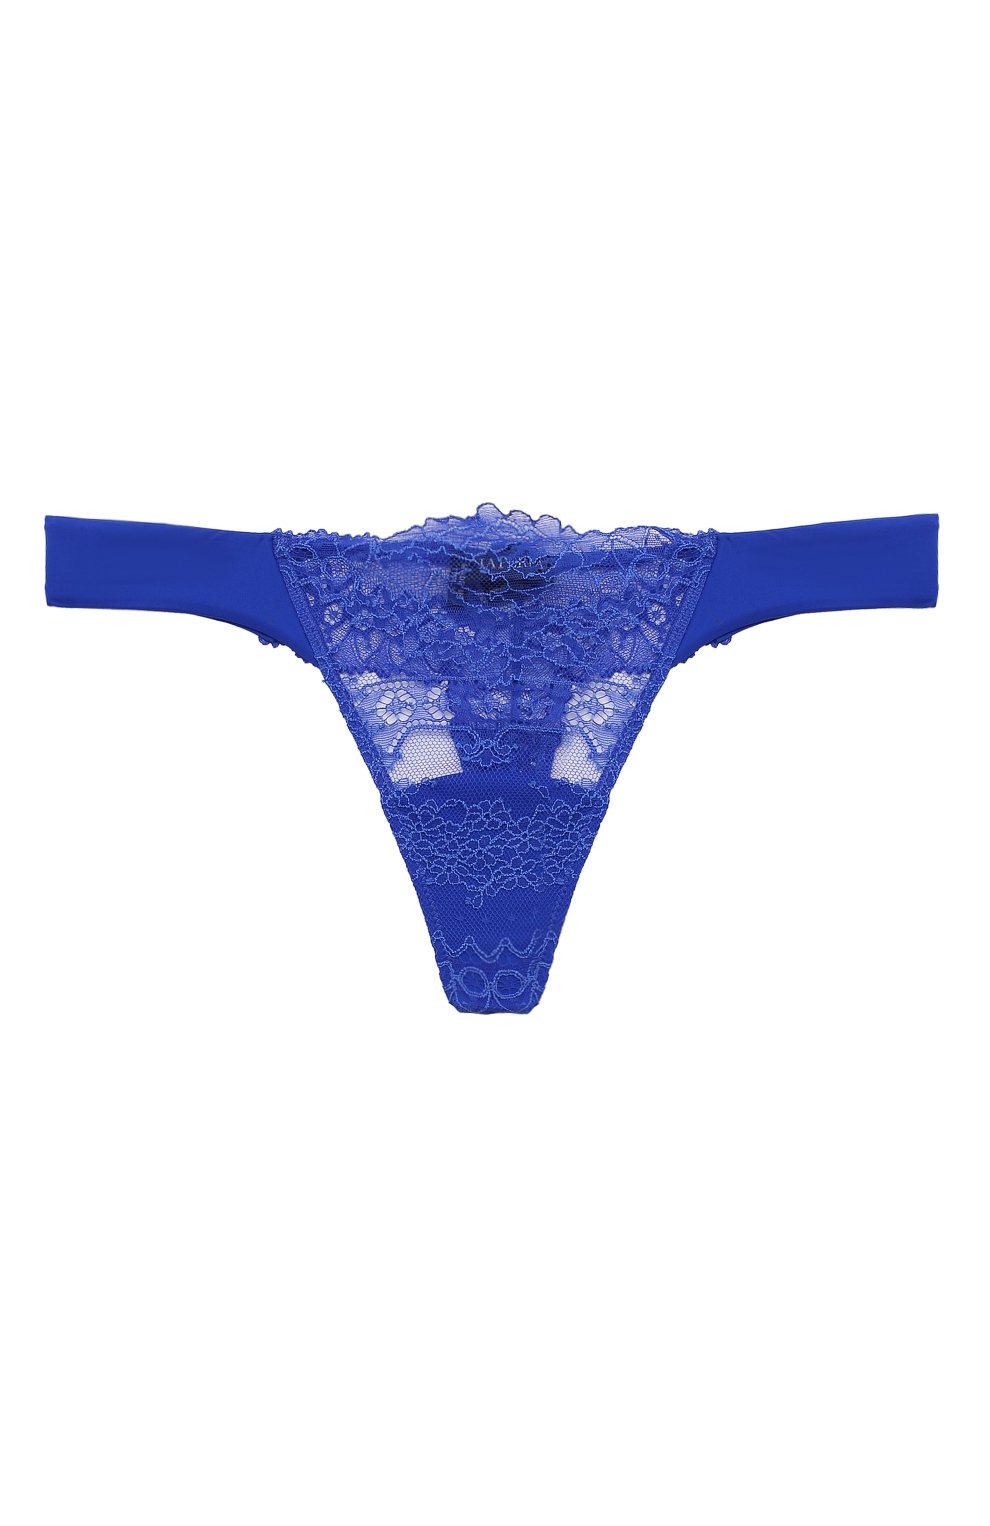 Женские синие трусы-стринги LA PERLA купить в интернет-магазине ЦУМ, арт.0049600